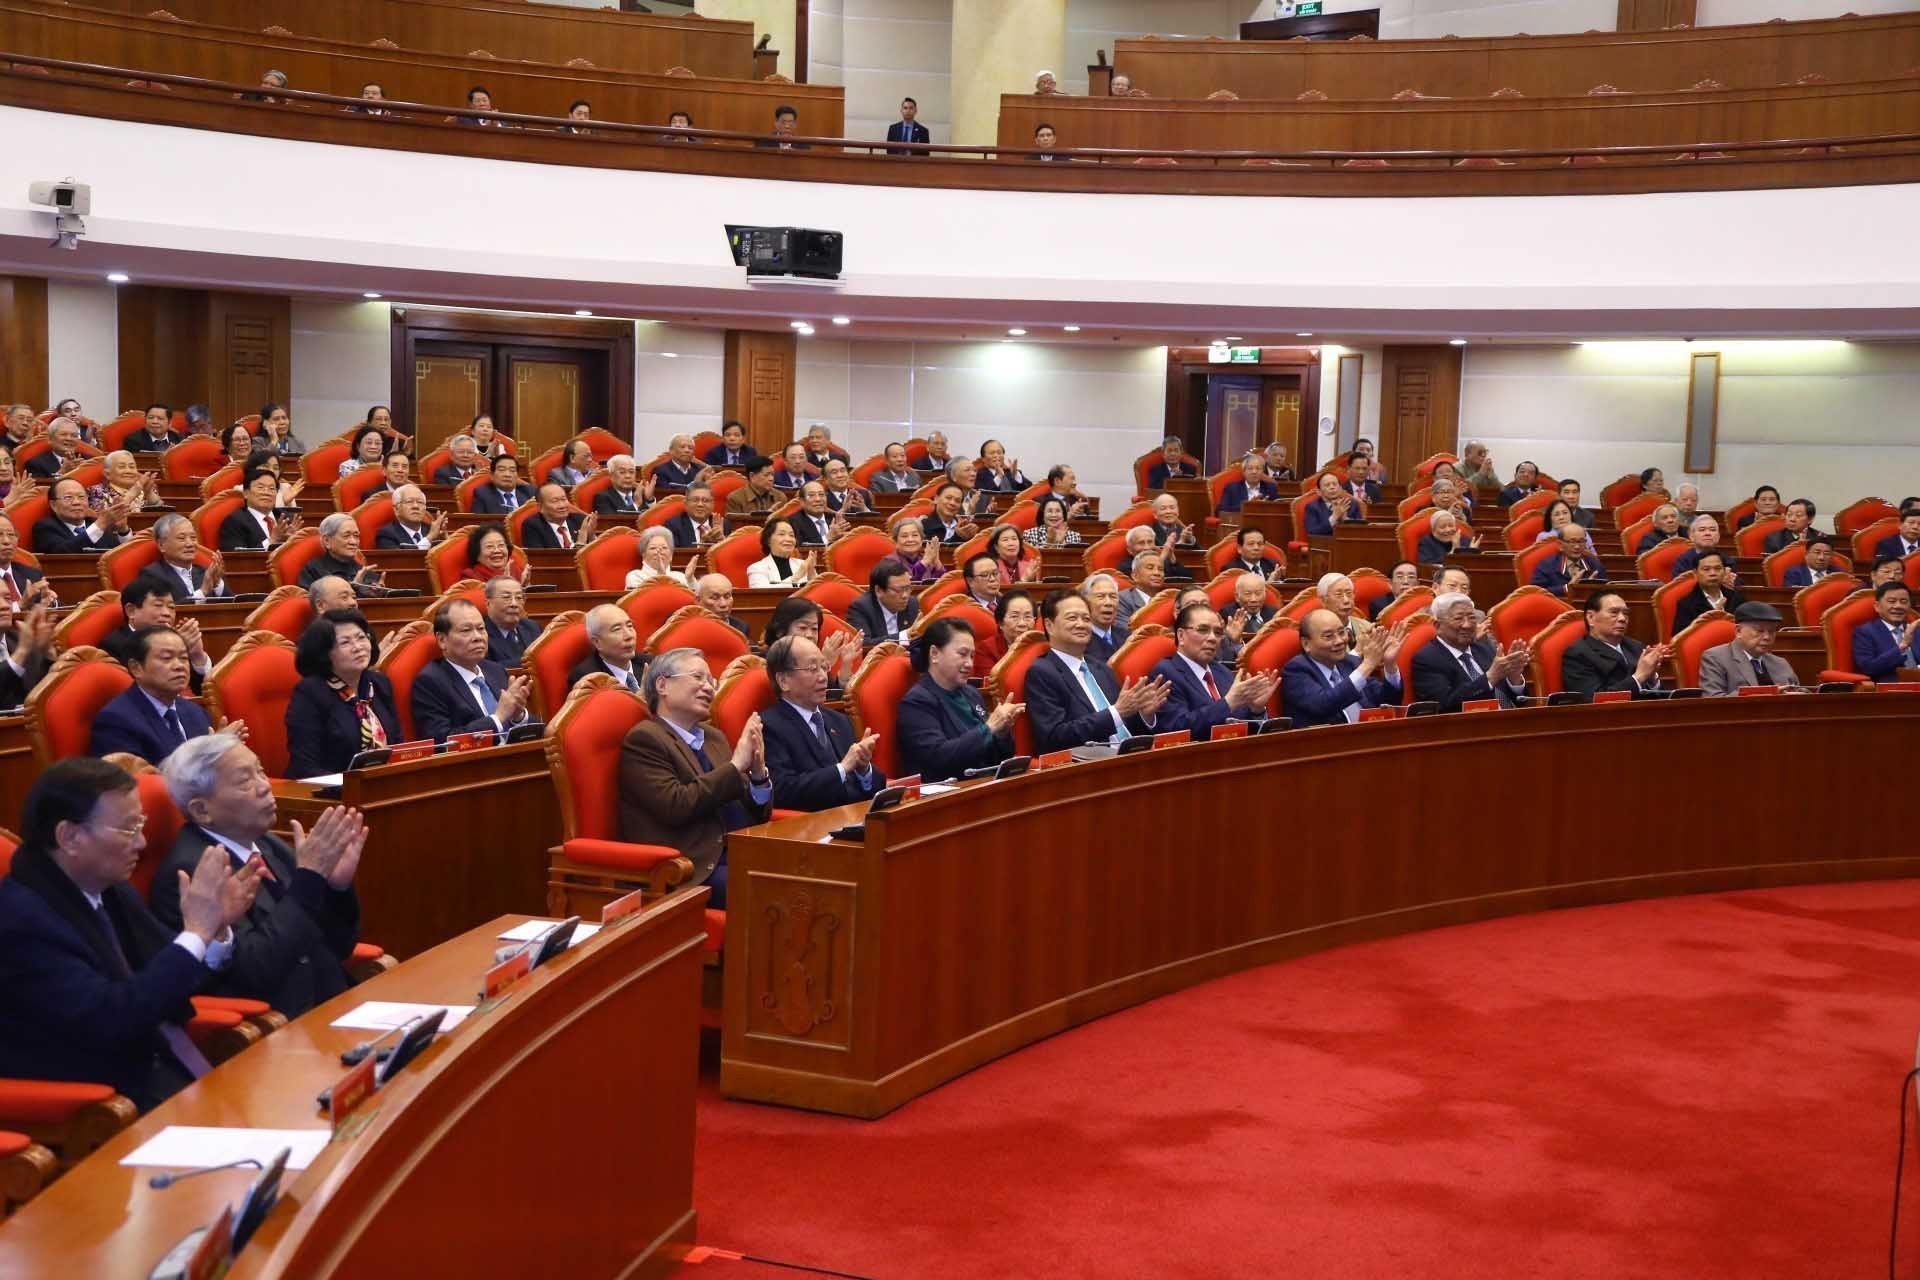 Bộ Chính trị, Ban Bí thư gặp mặt các đồng chí nguyên lãnh đạo cấp cao của Đảng, Nhà nước